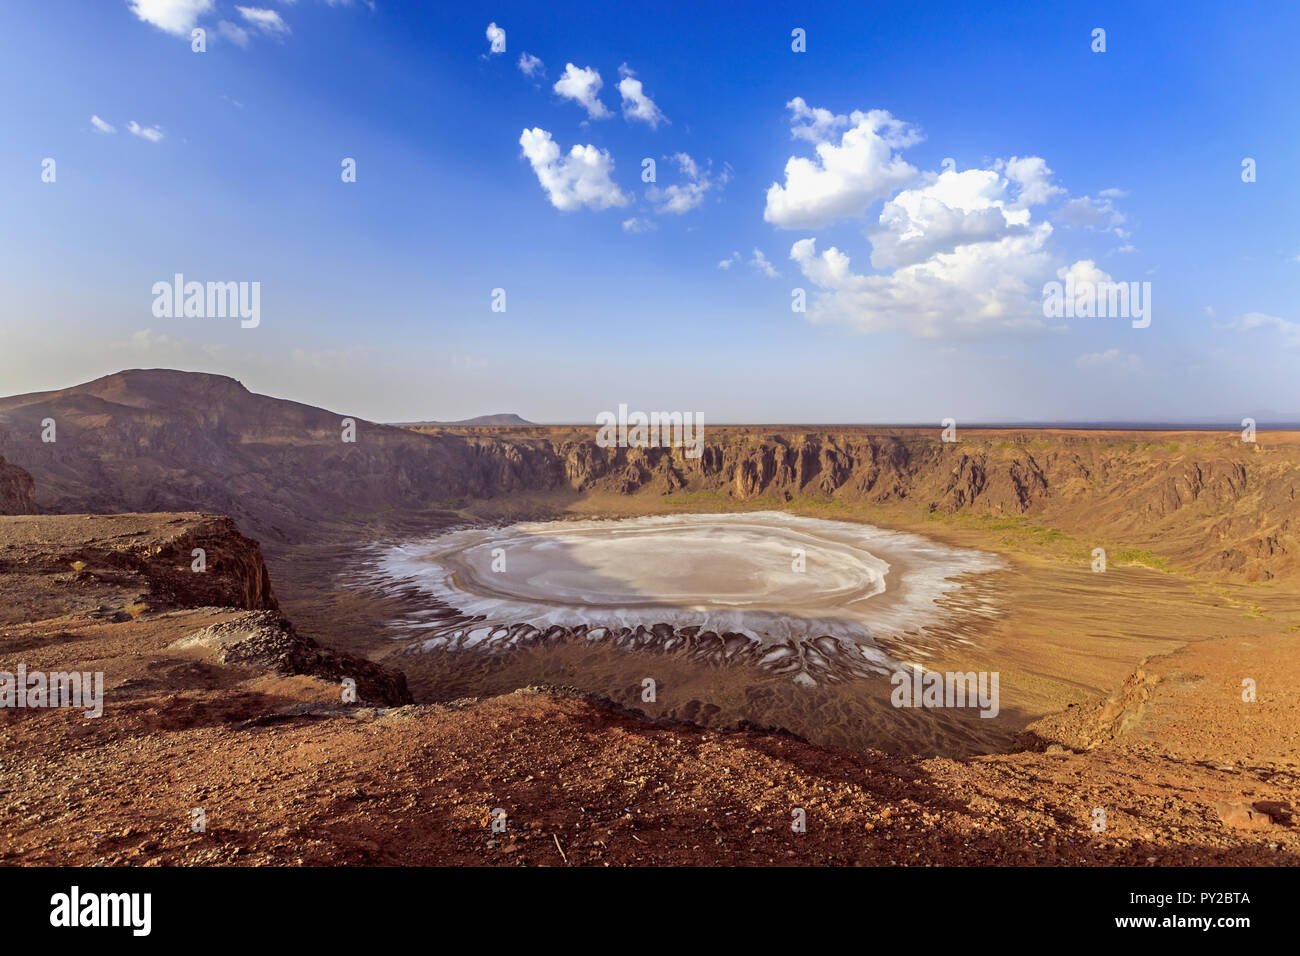 Al Wahbah crater, Saudi Arabia Stock Photo